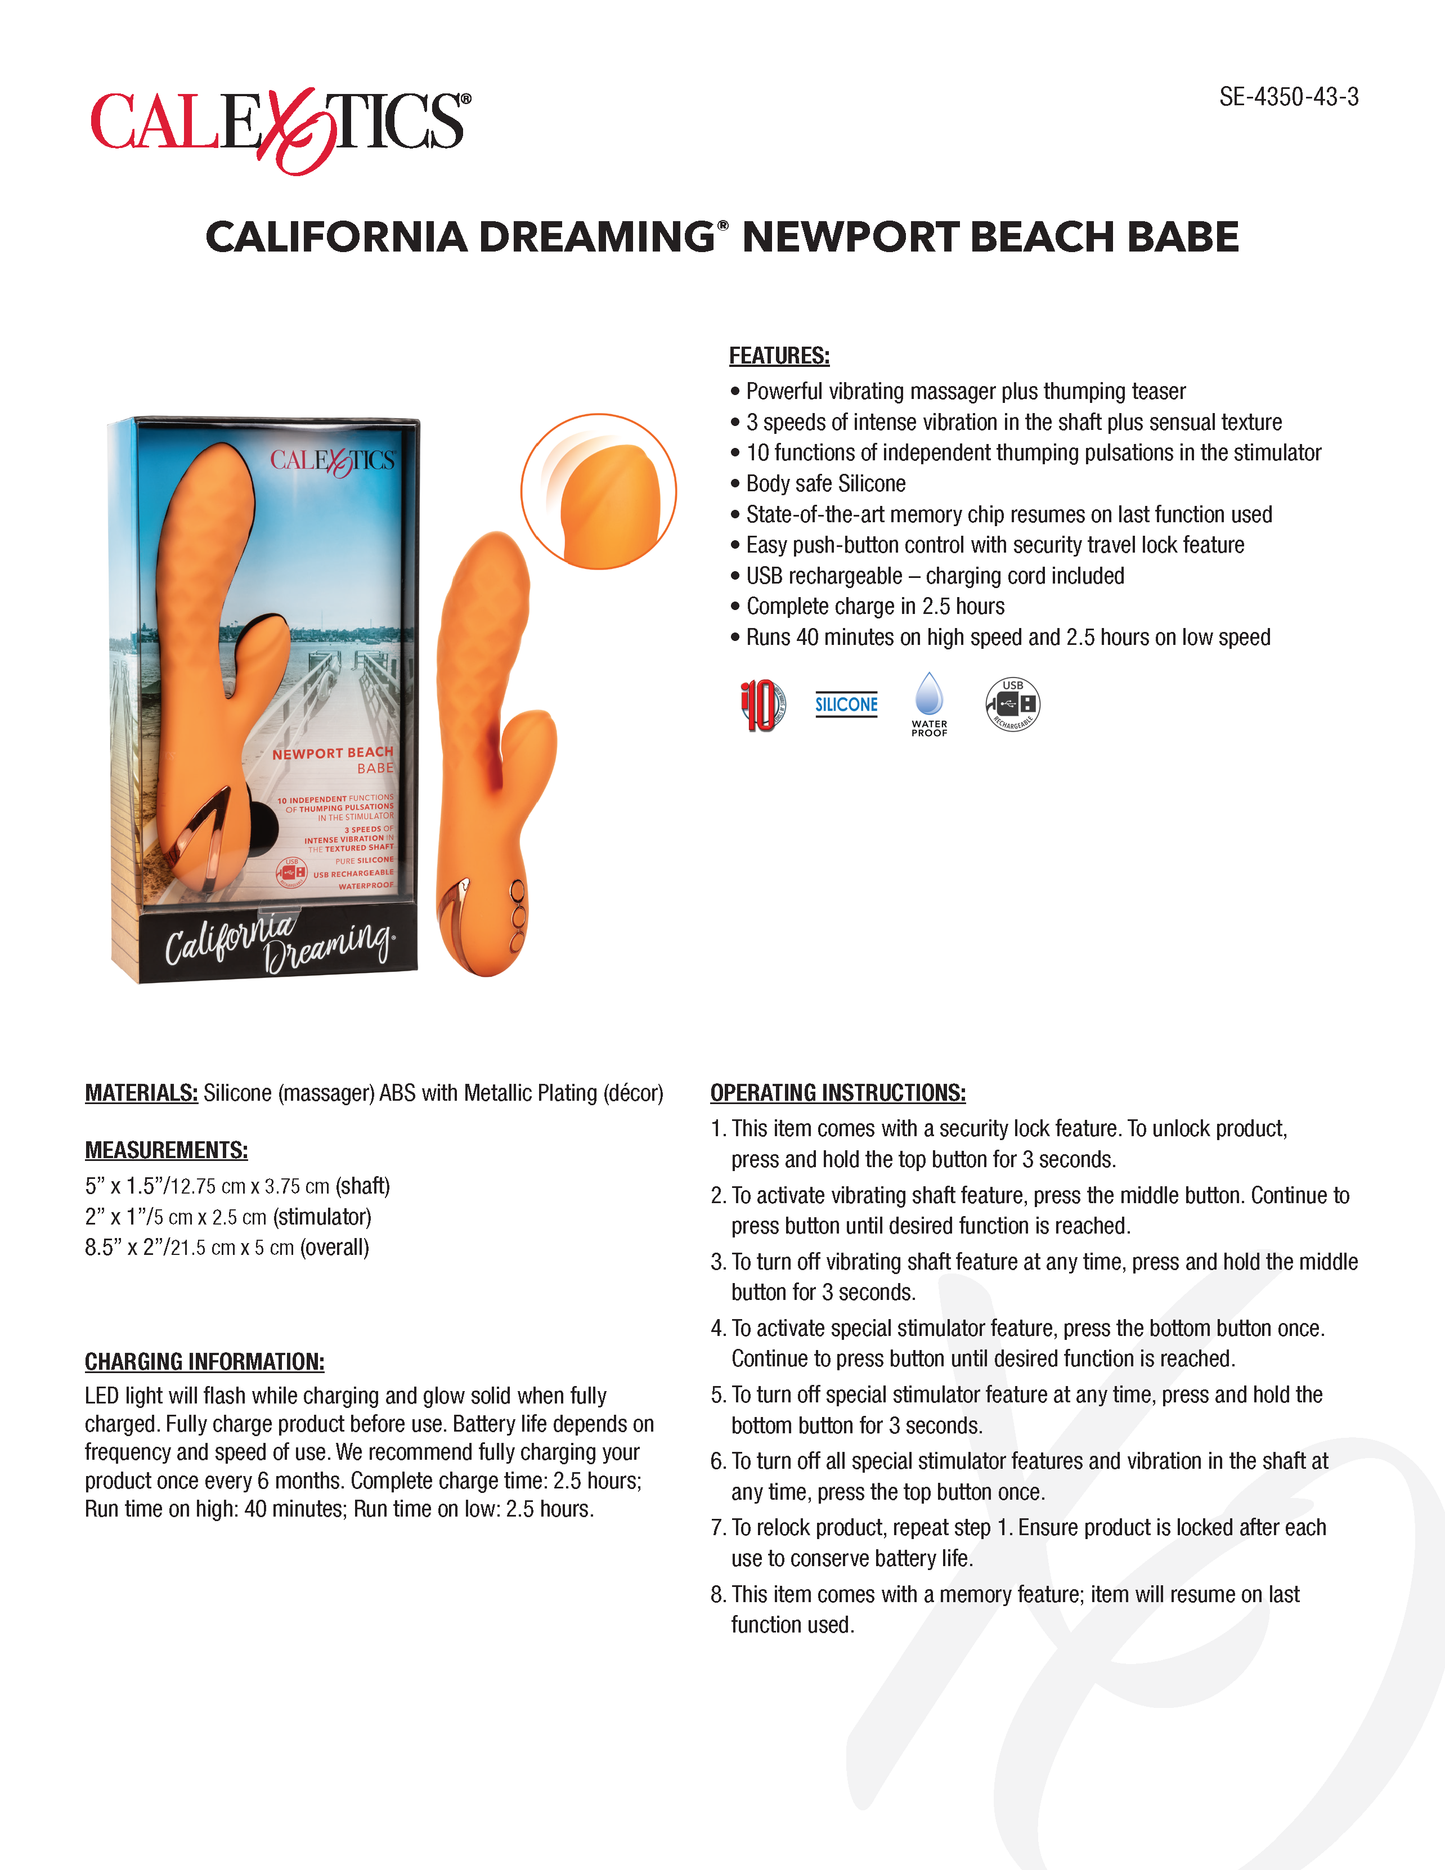 California Dreaming Newport Beach Babe